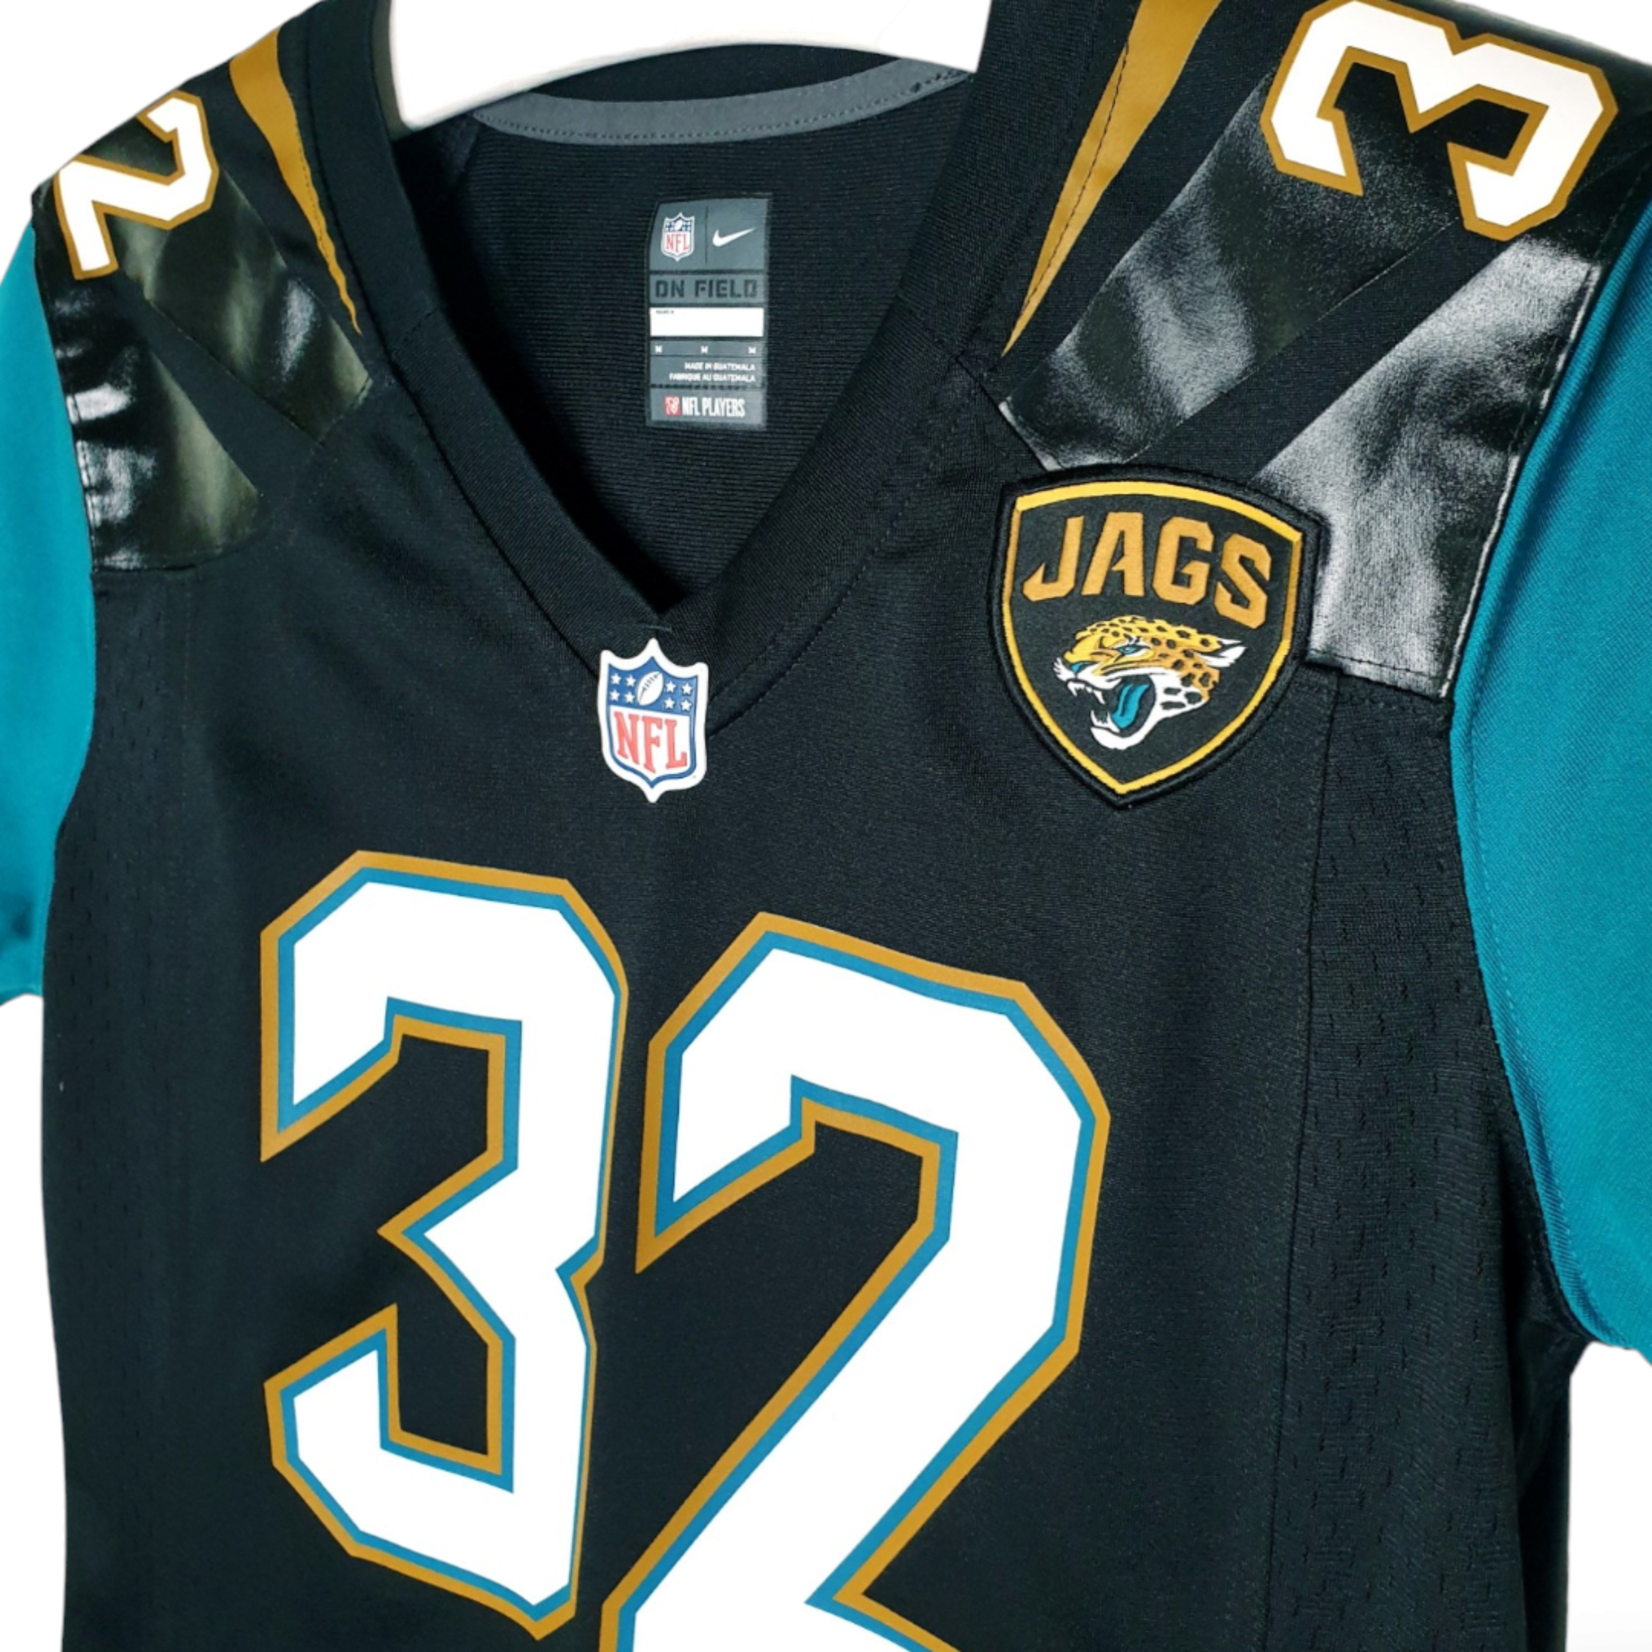 Nike Origineel Nike vintage NFL shirt Jacksonville Jaguars 2013 #32 Jones-Drew